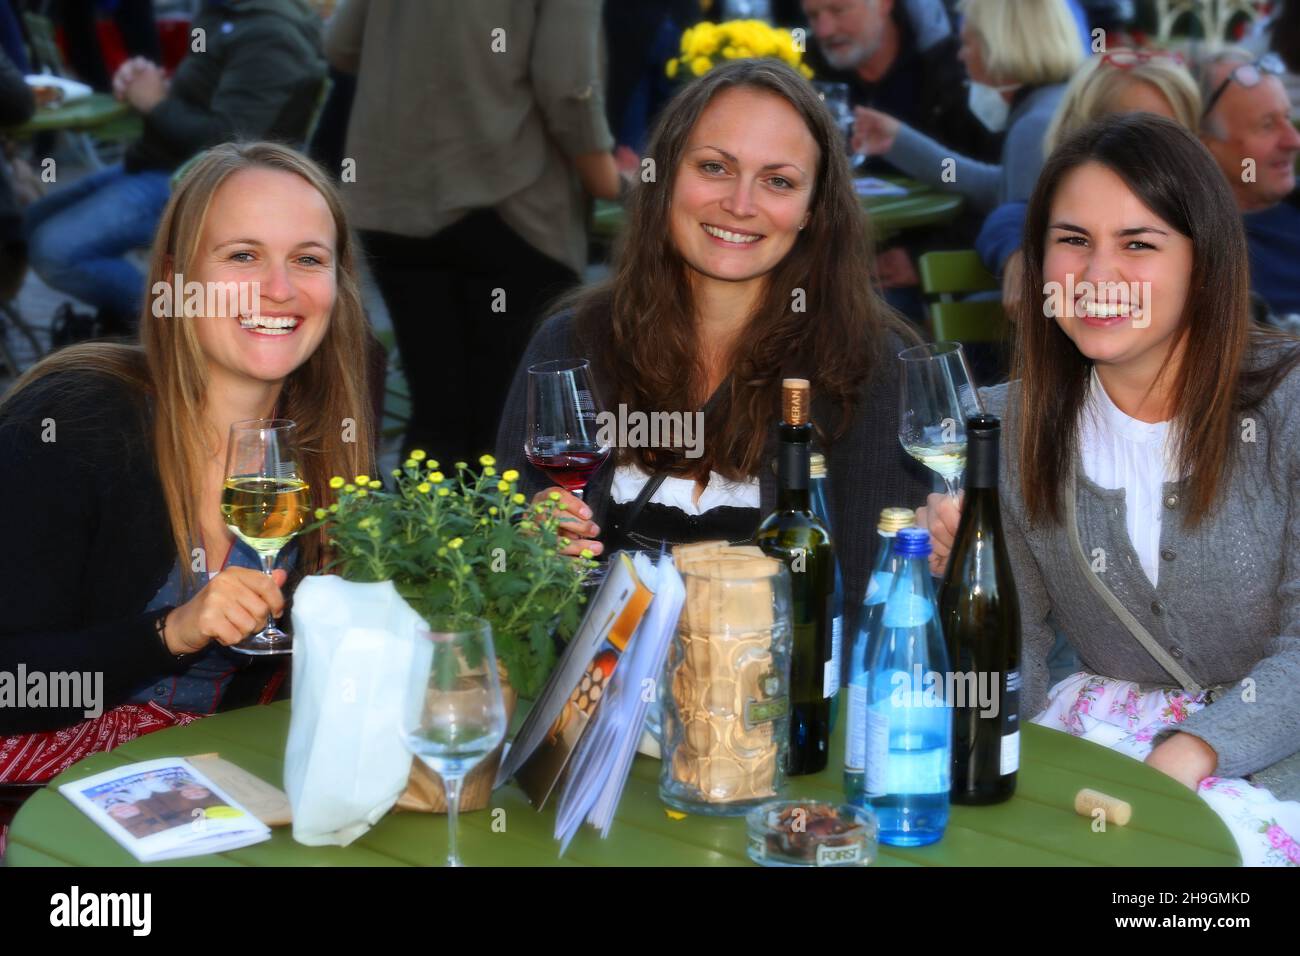 Biergarten, Meran, Kurstadt, Weinfest, Trachtenfest, Unterhaltung und Freude im Biergarten beim Wein und Bier trinken Stock Photo